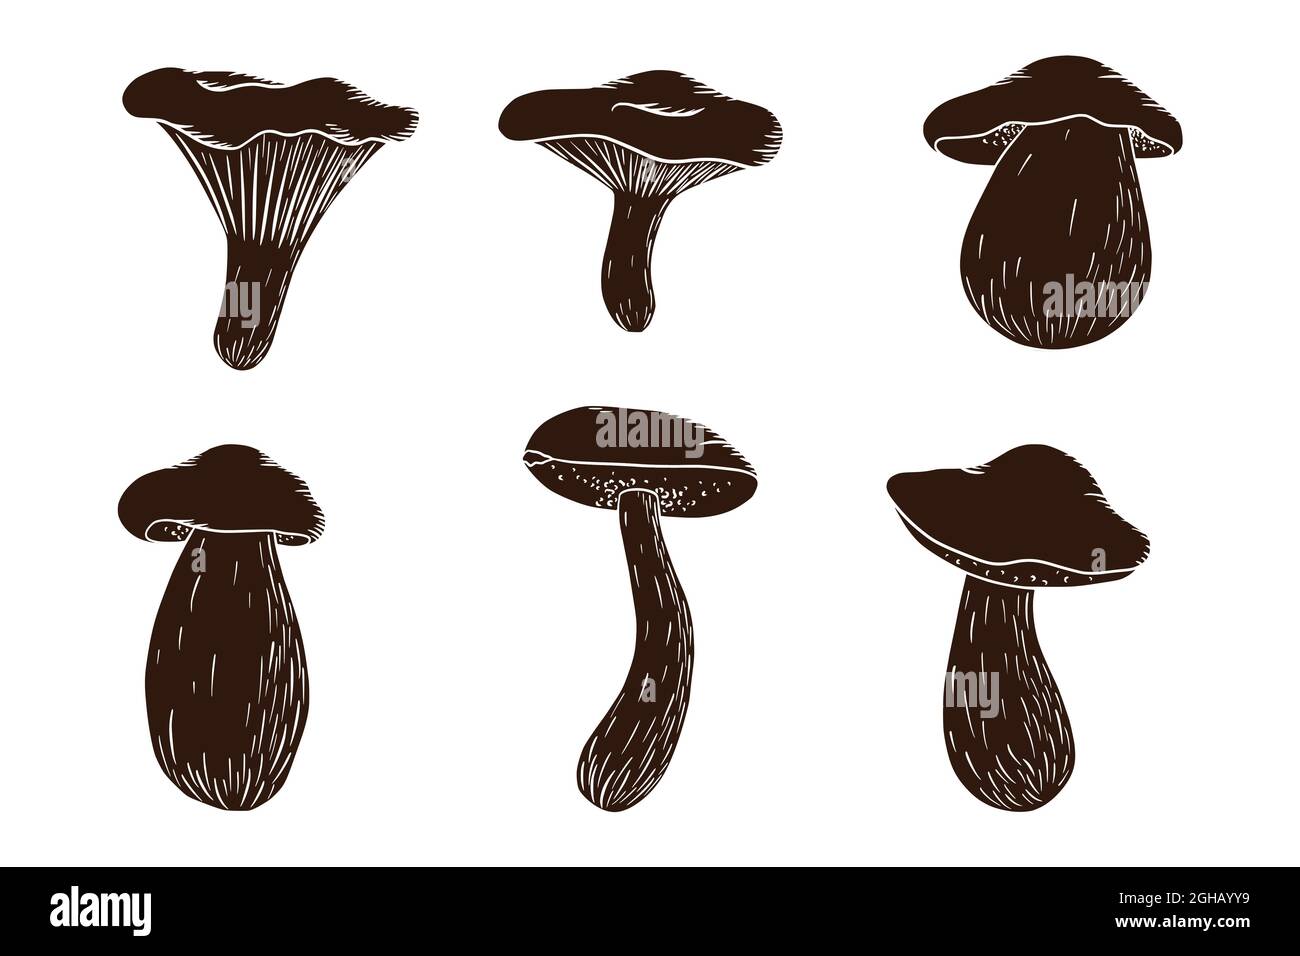 Set silhouette di funghi forestali. Collezione di funghi commestibili. Fungo bianco, russula, boleto, chanterelle. Illustrazione vettoriale per logo, menu, stampa, adesivi, design e decorazione. Vettore Premium Illustrazione Vettoriale